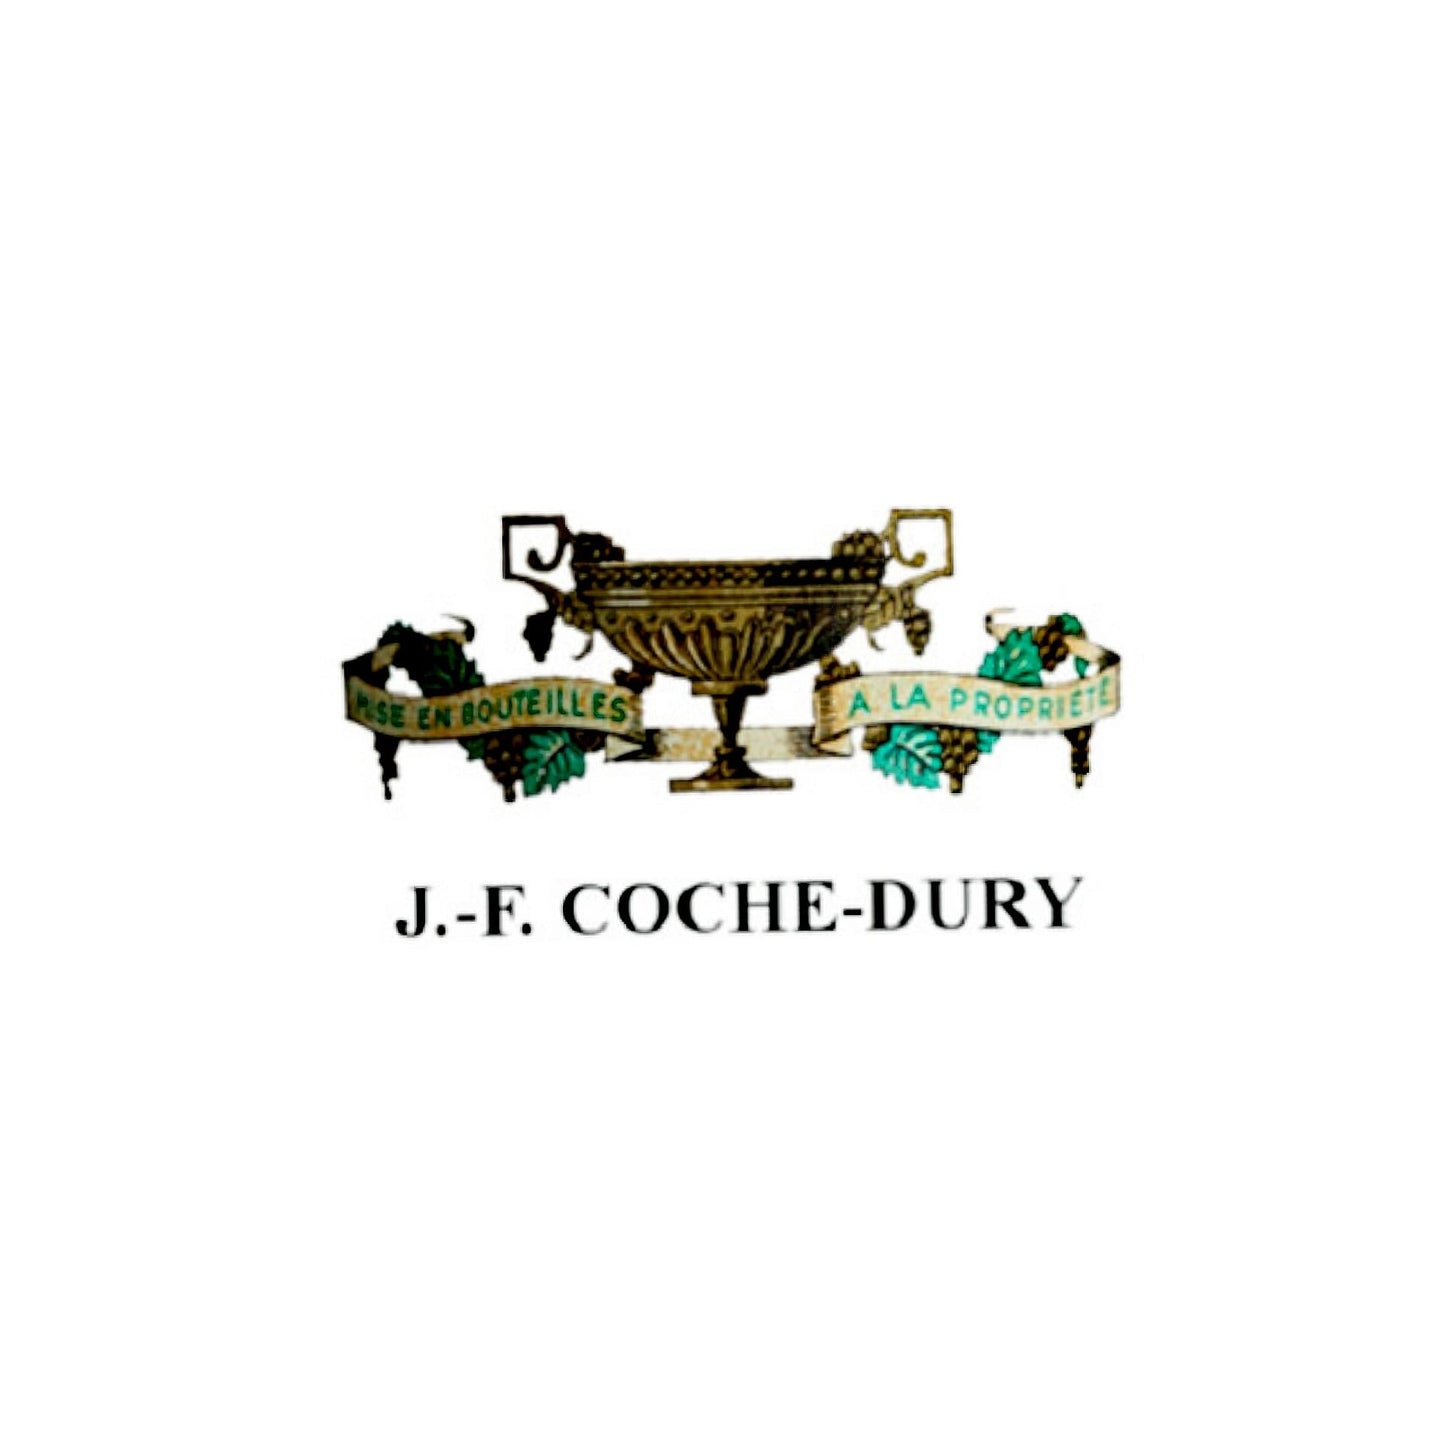 2015 Coche Dury, Bourgogne Aligote 750ml